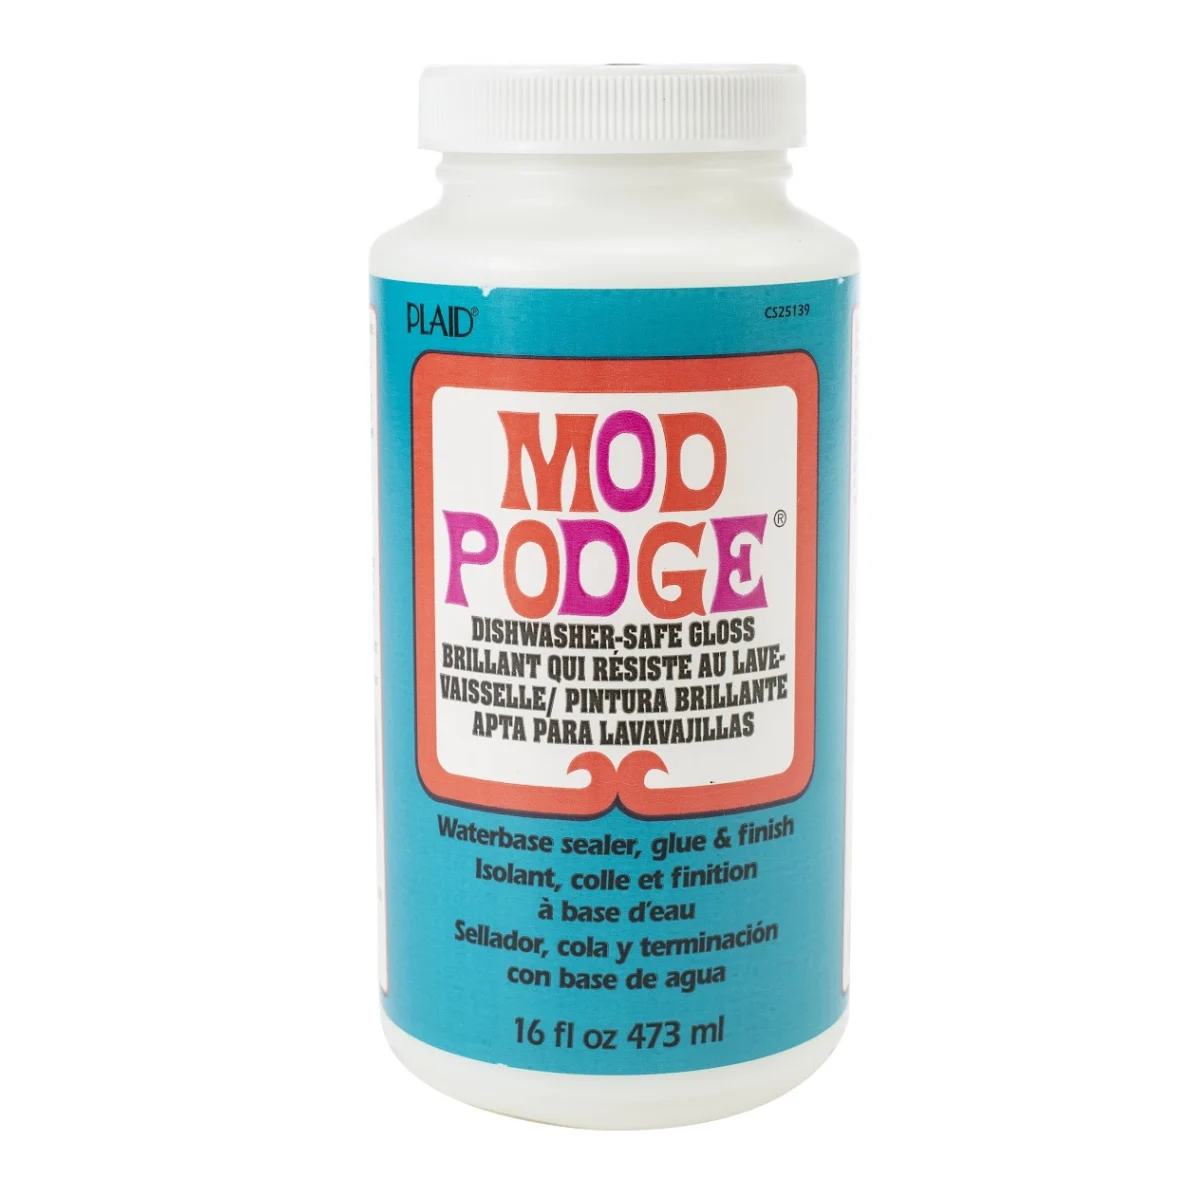 Mod Podge Matte: Your Complete Guide - Mod Podge Rocks